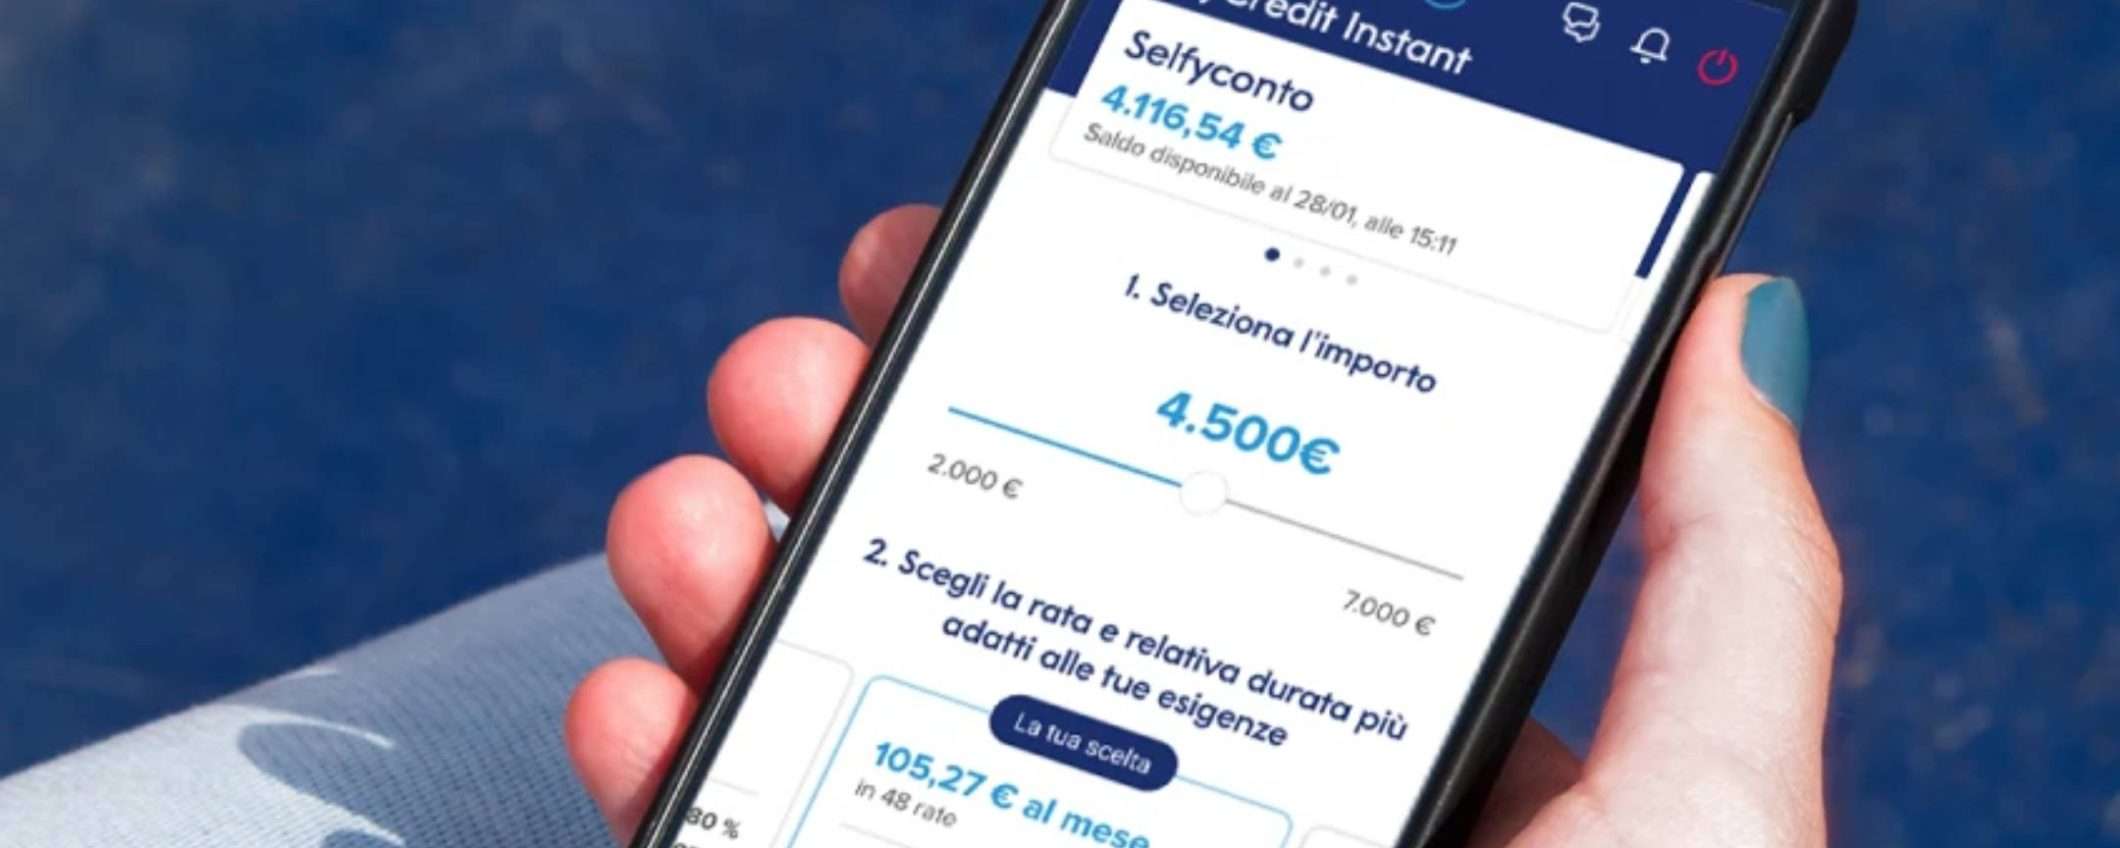 SelfyConto: il conto con tutti i servizi disponibili in app